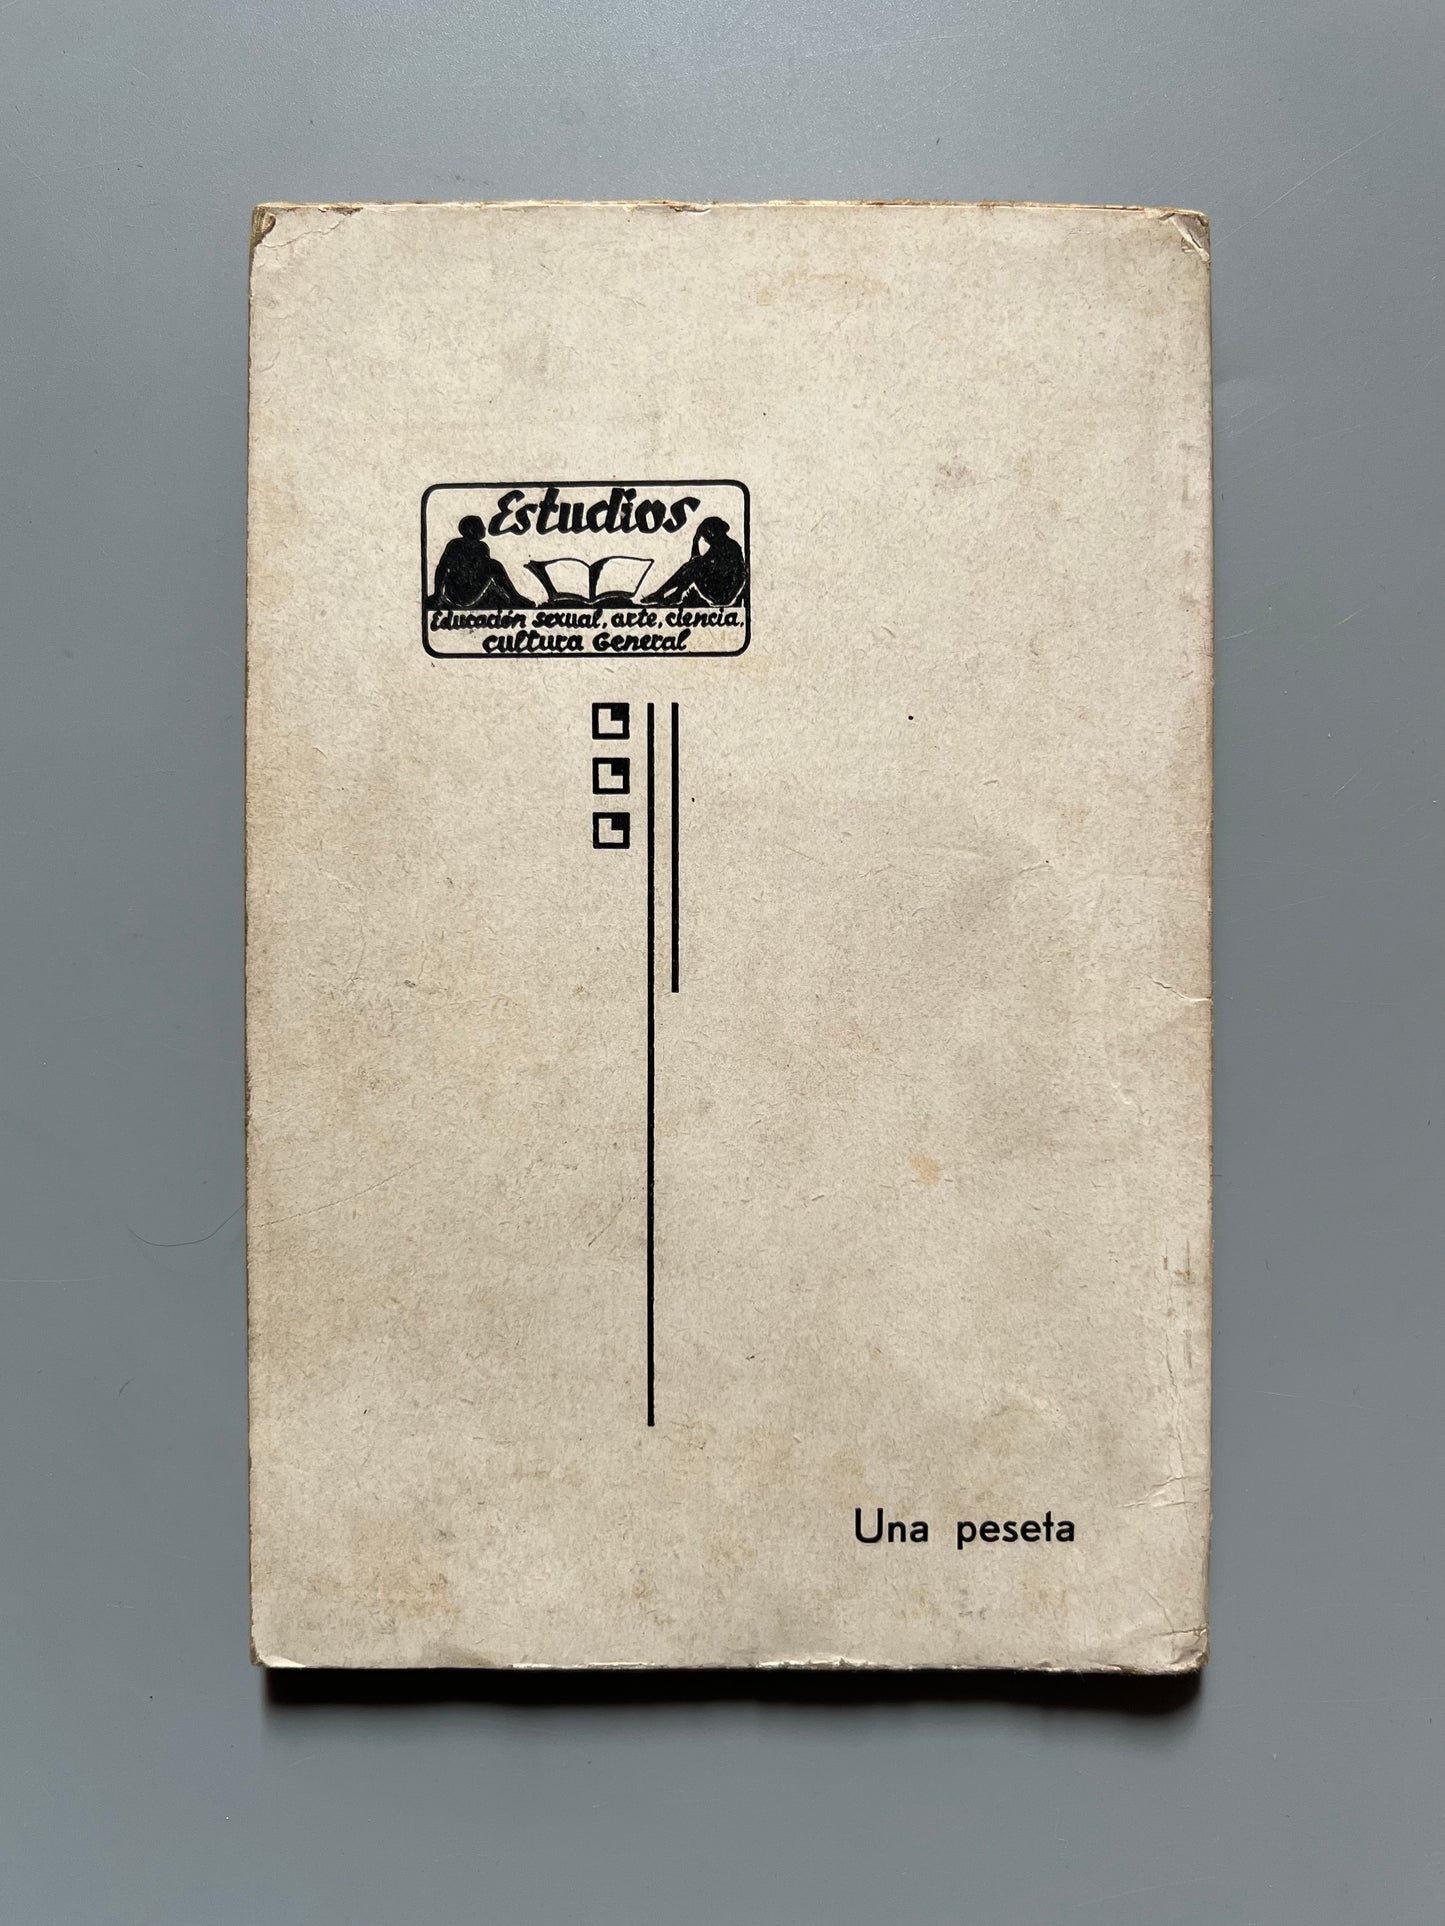 La impotencia genital, Eduardo Arias Vallejo - Biblioteca de Estudios, 1934